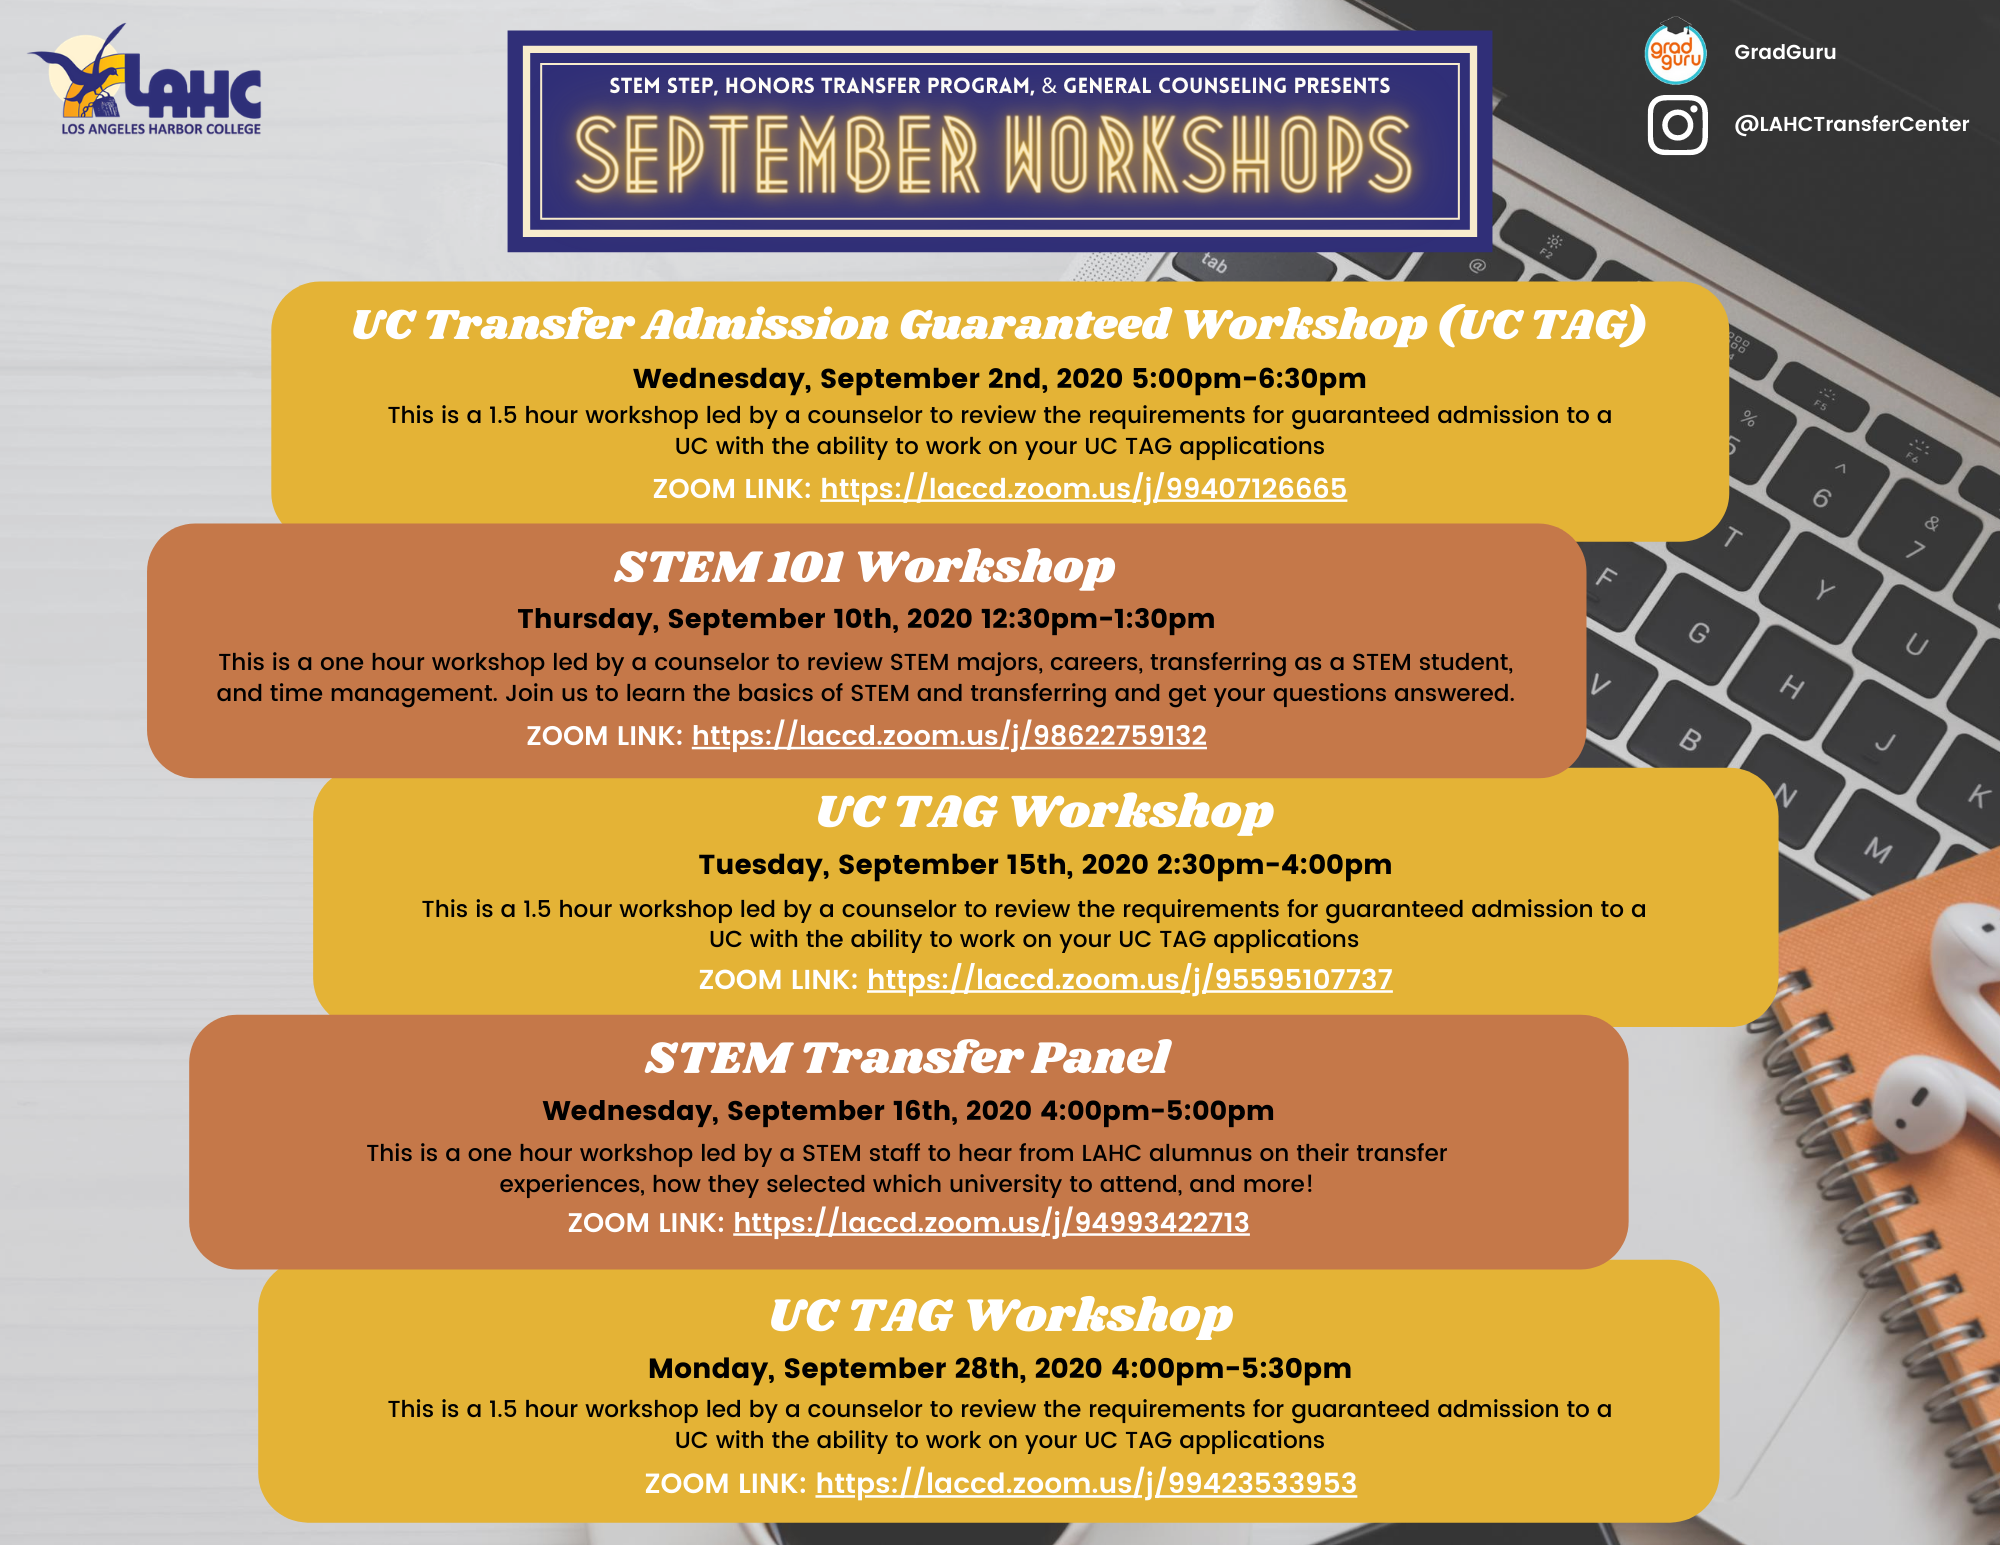 Advertising of the September STEM Workshops